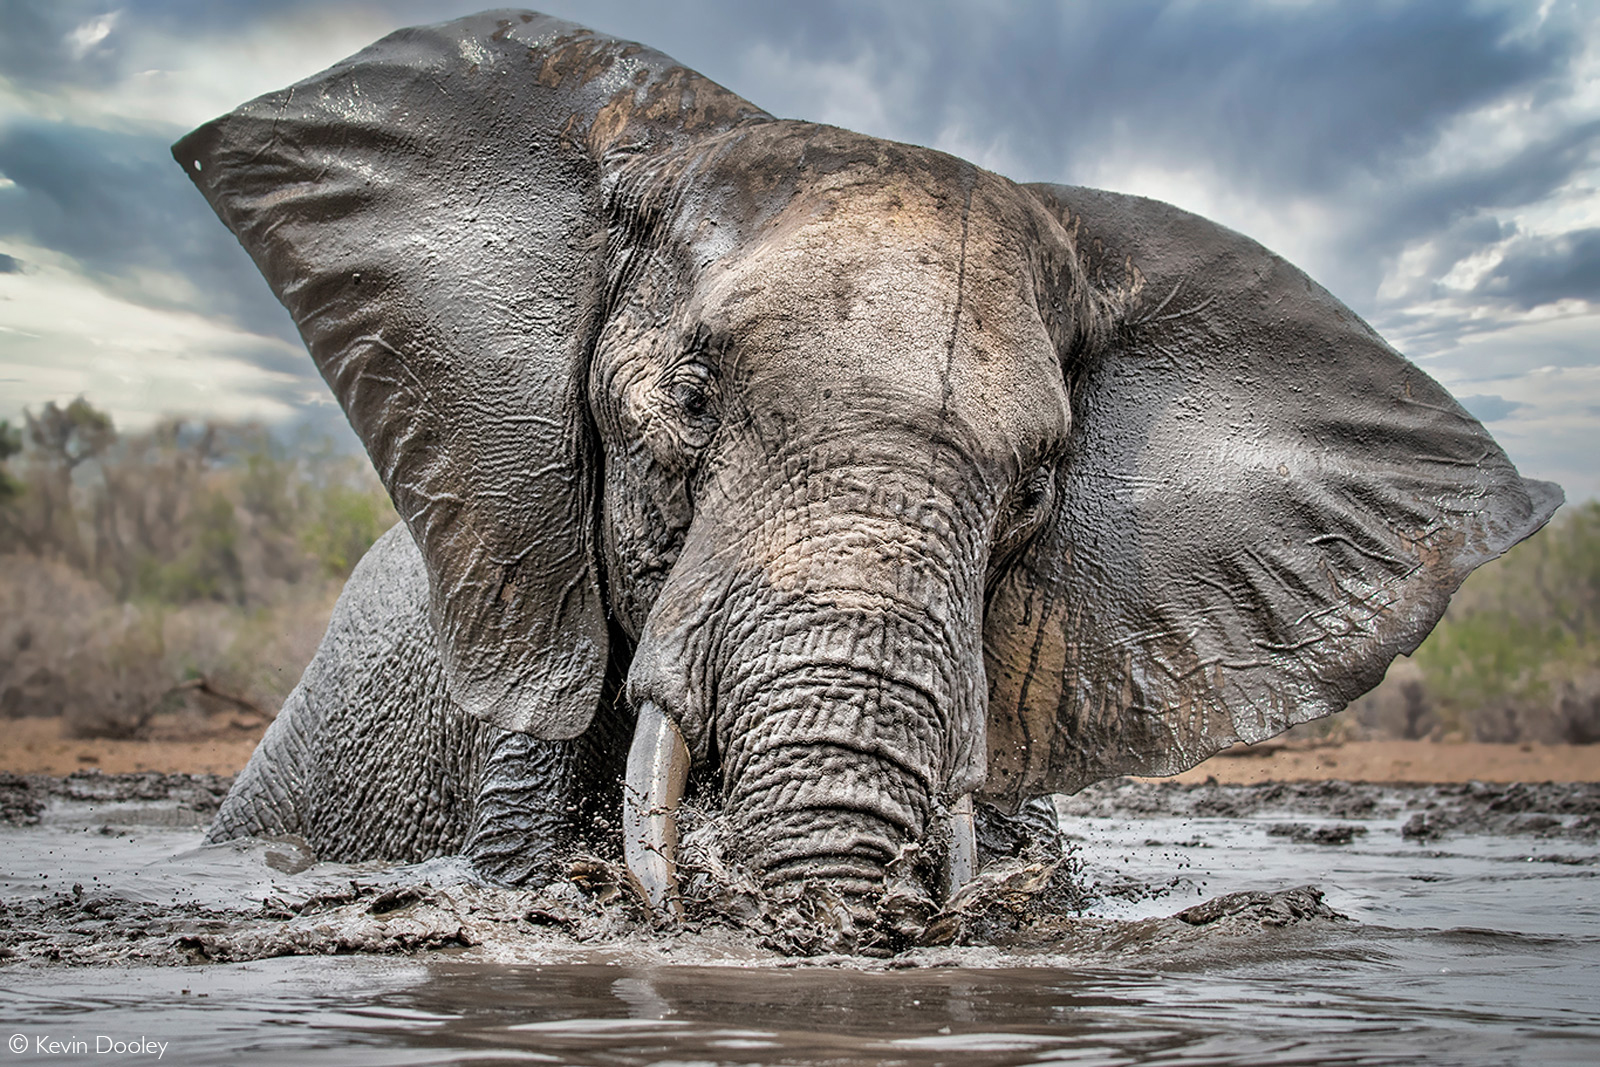 Elephant taking a swim. Mashatu Game Reserve, Botswana © Kevin Dooley